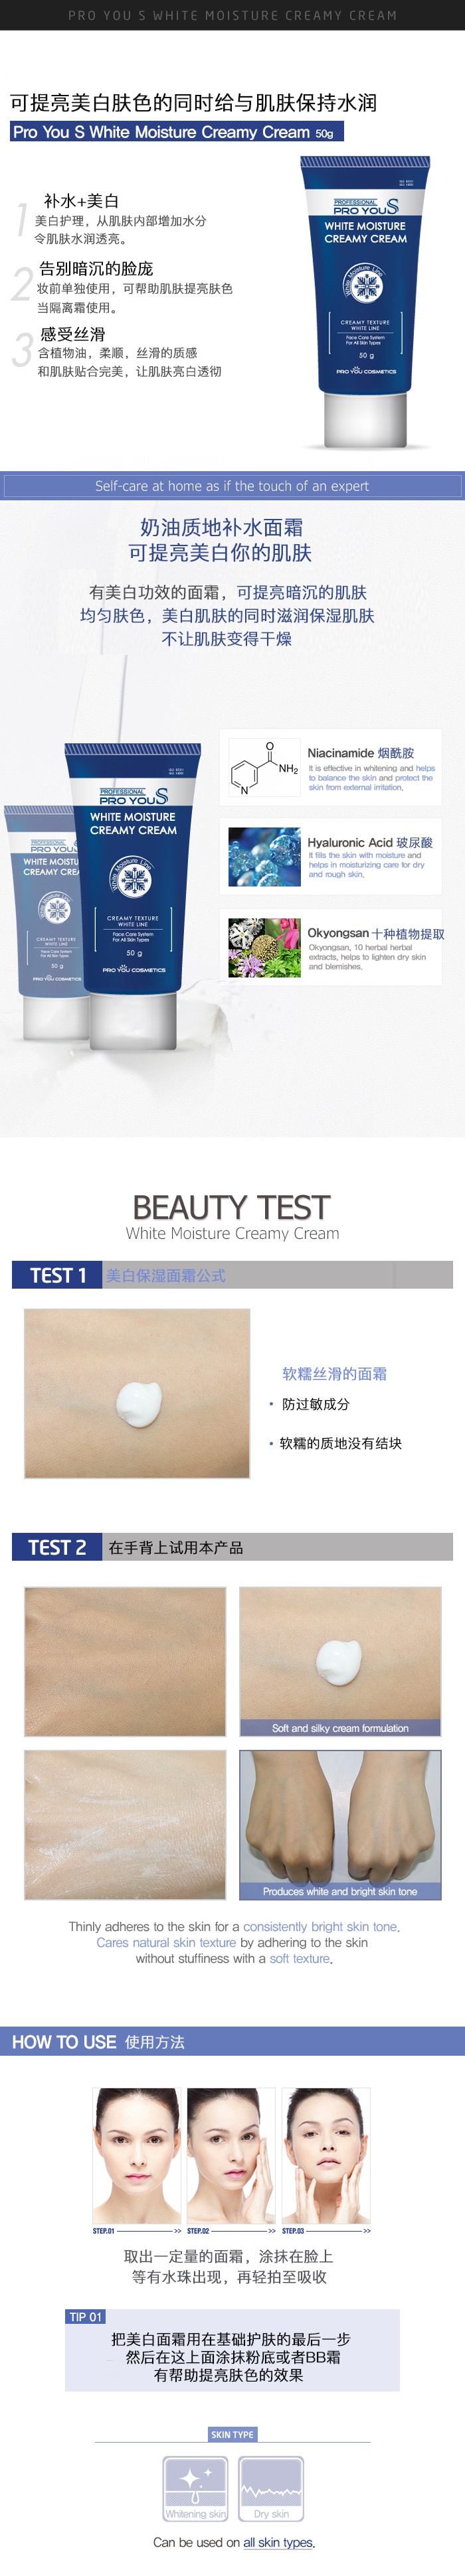 韓國 Pro You Professional 美容院等級 美白保濕乳霜 任何皮膚適用 50ml (版本不同 隨機發放)